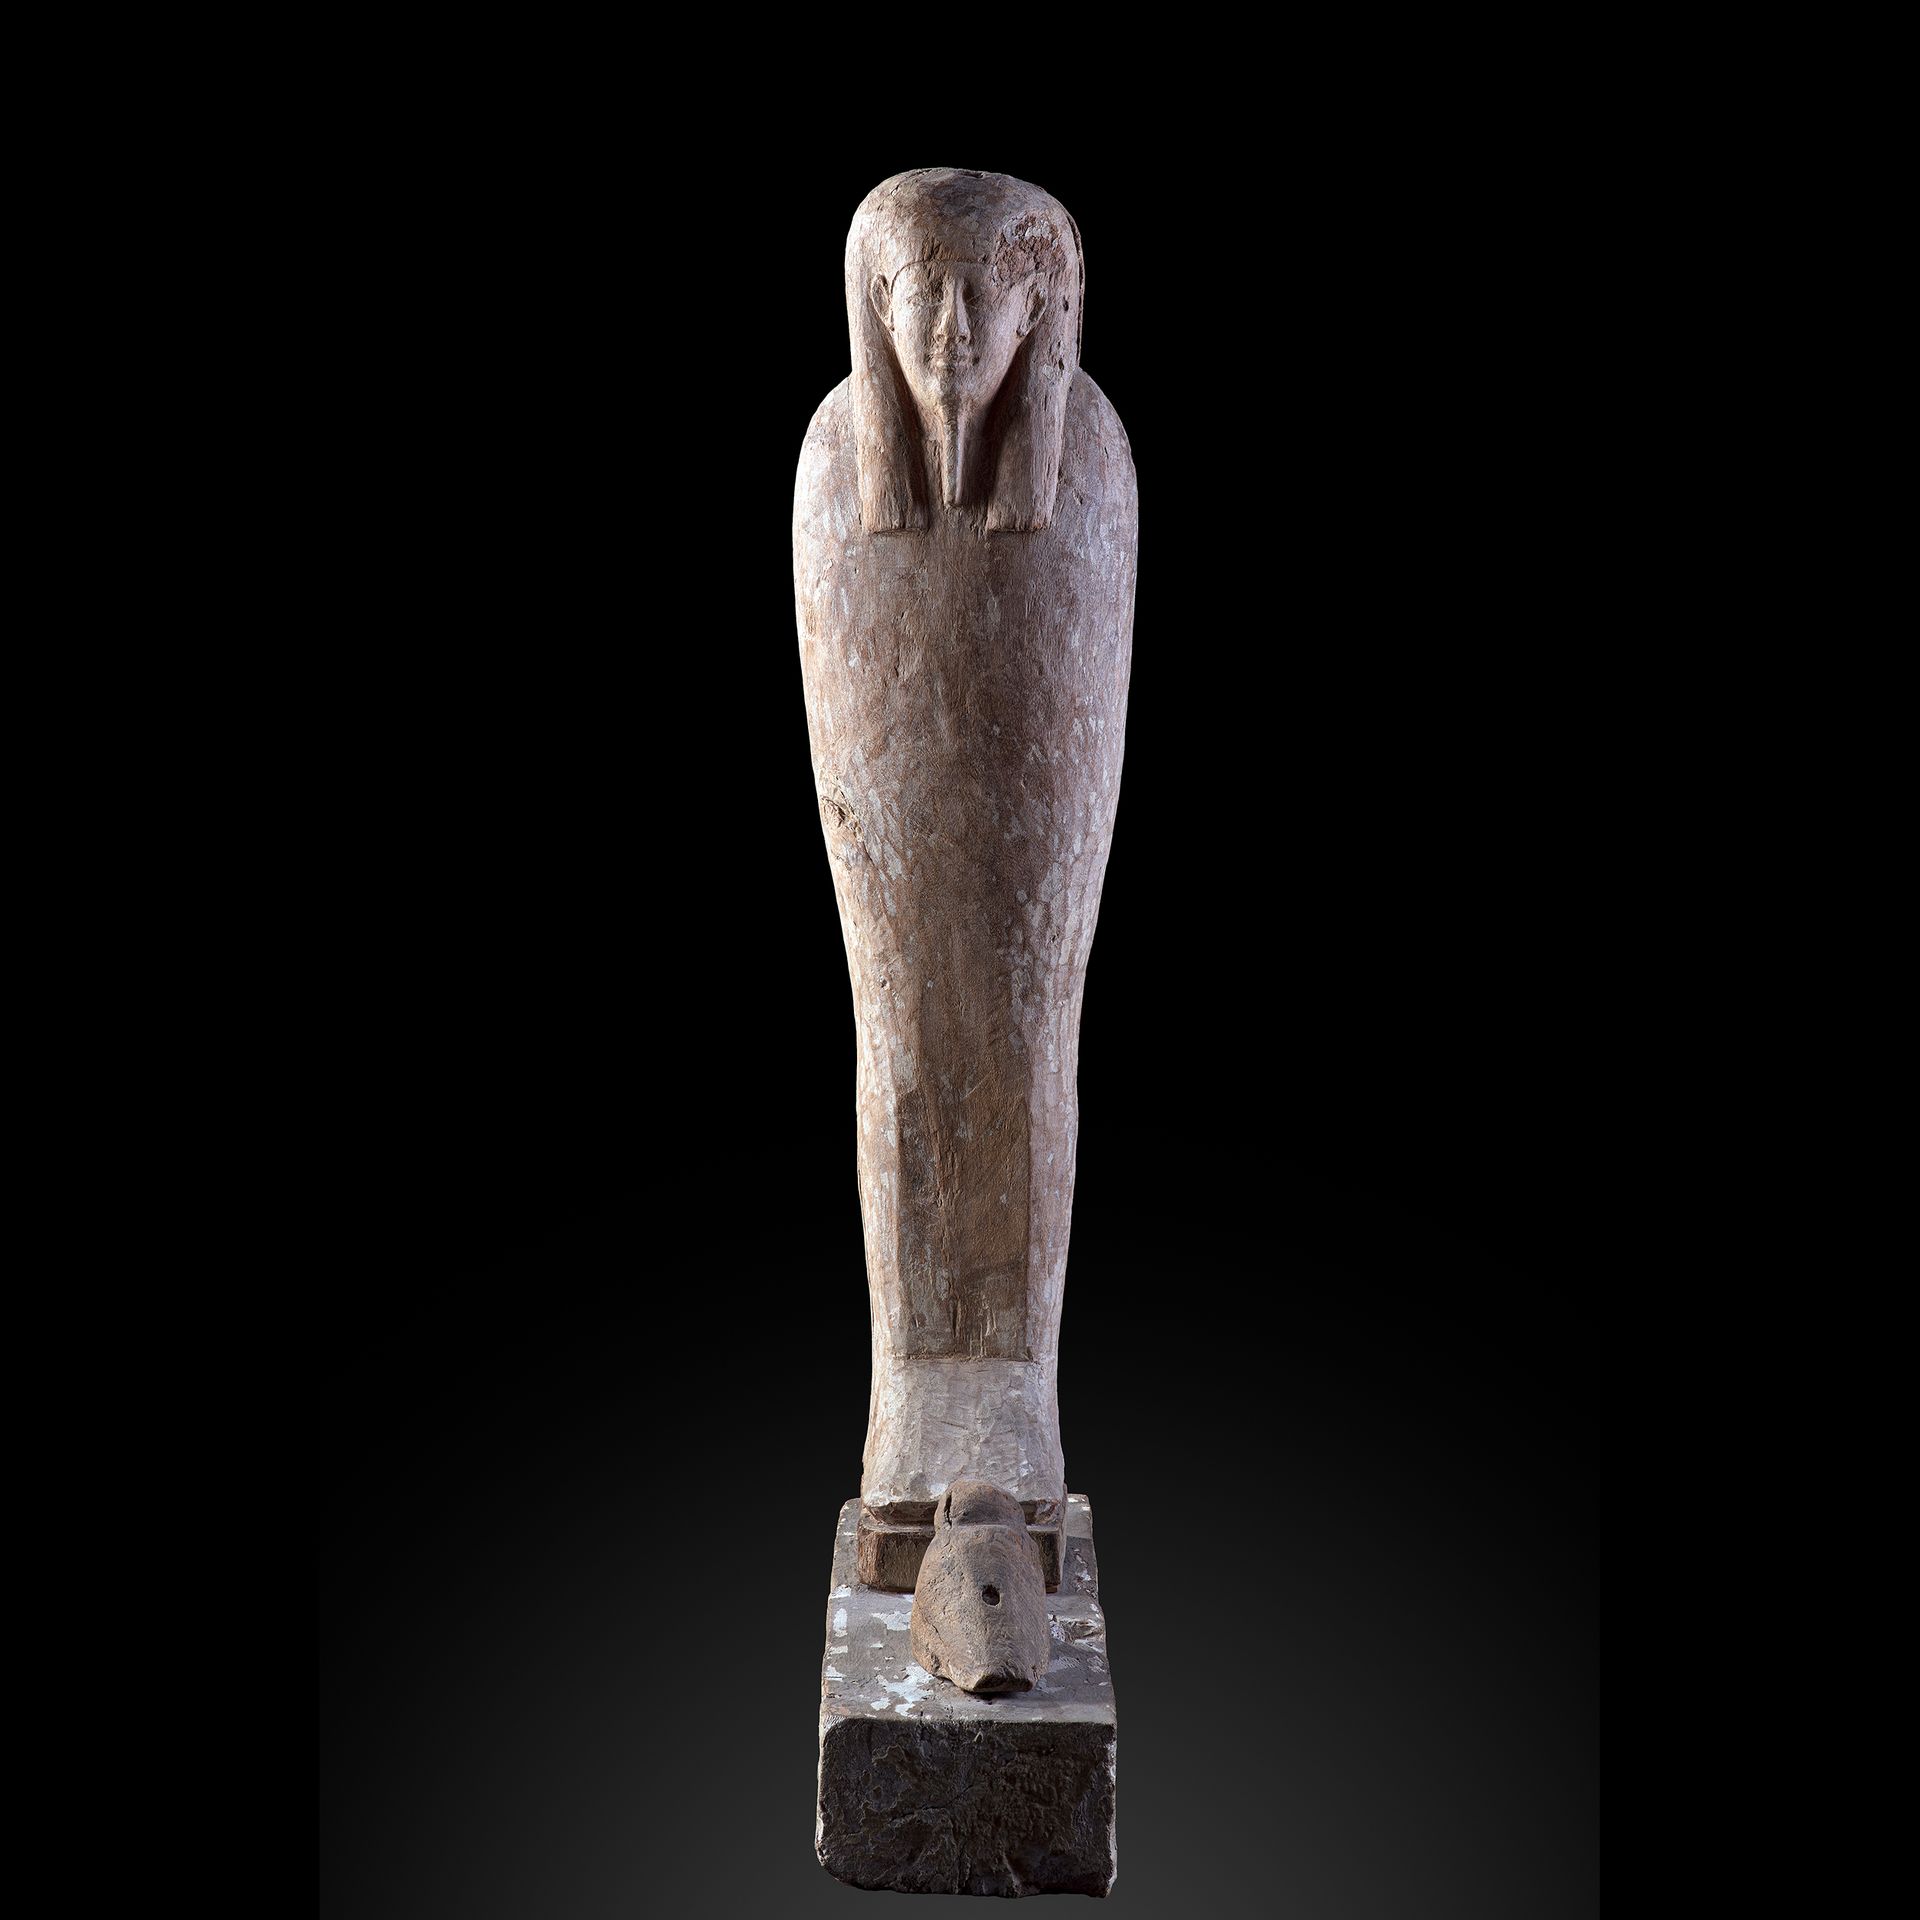 Null PTAH SOKAR OSIRIS
Legno
H. 65 cm 
Egitto, periodo tolemaico, 332-30 a.C. 

&hellip;